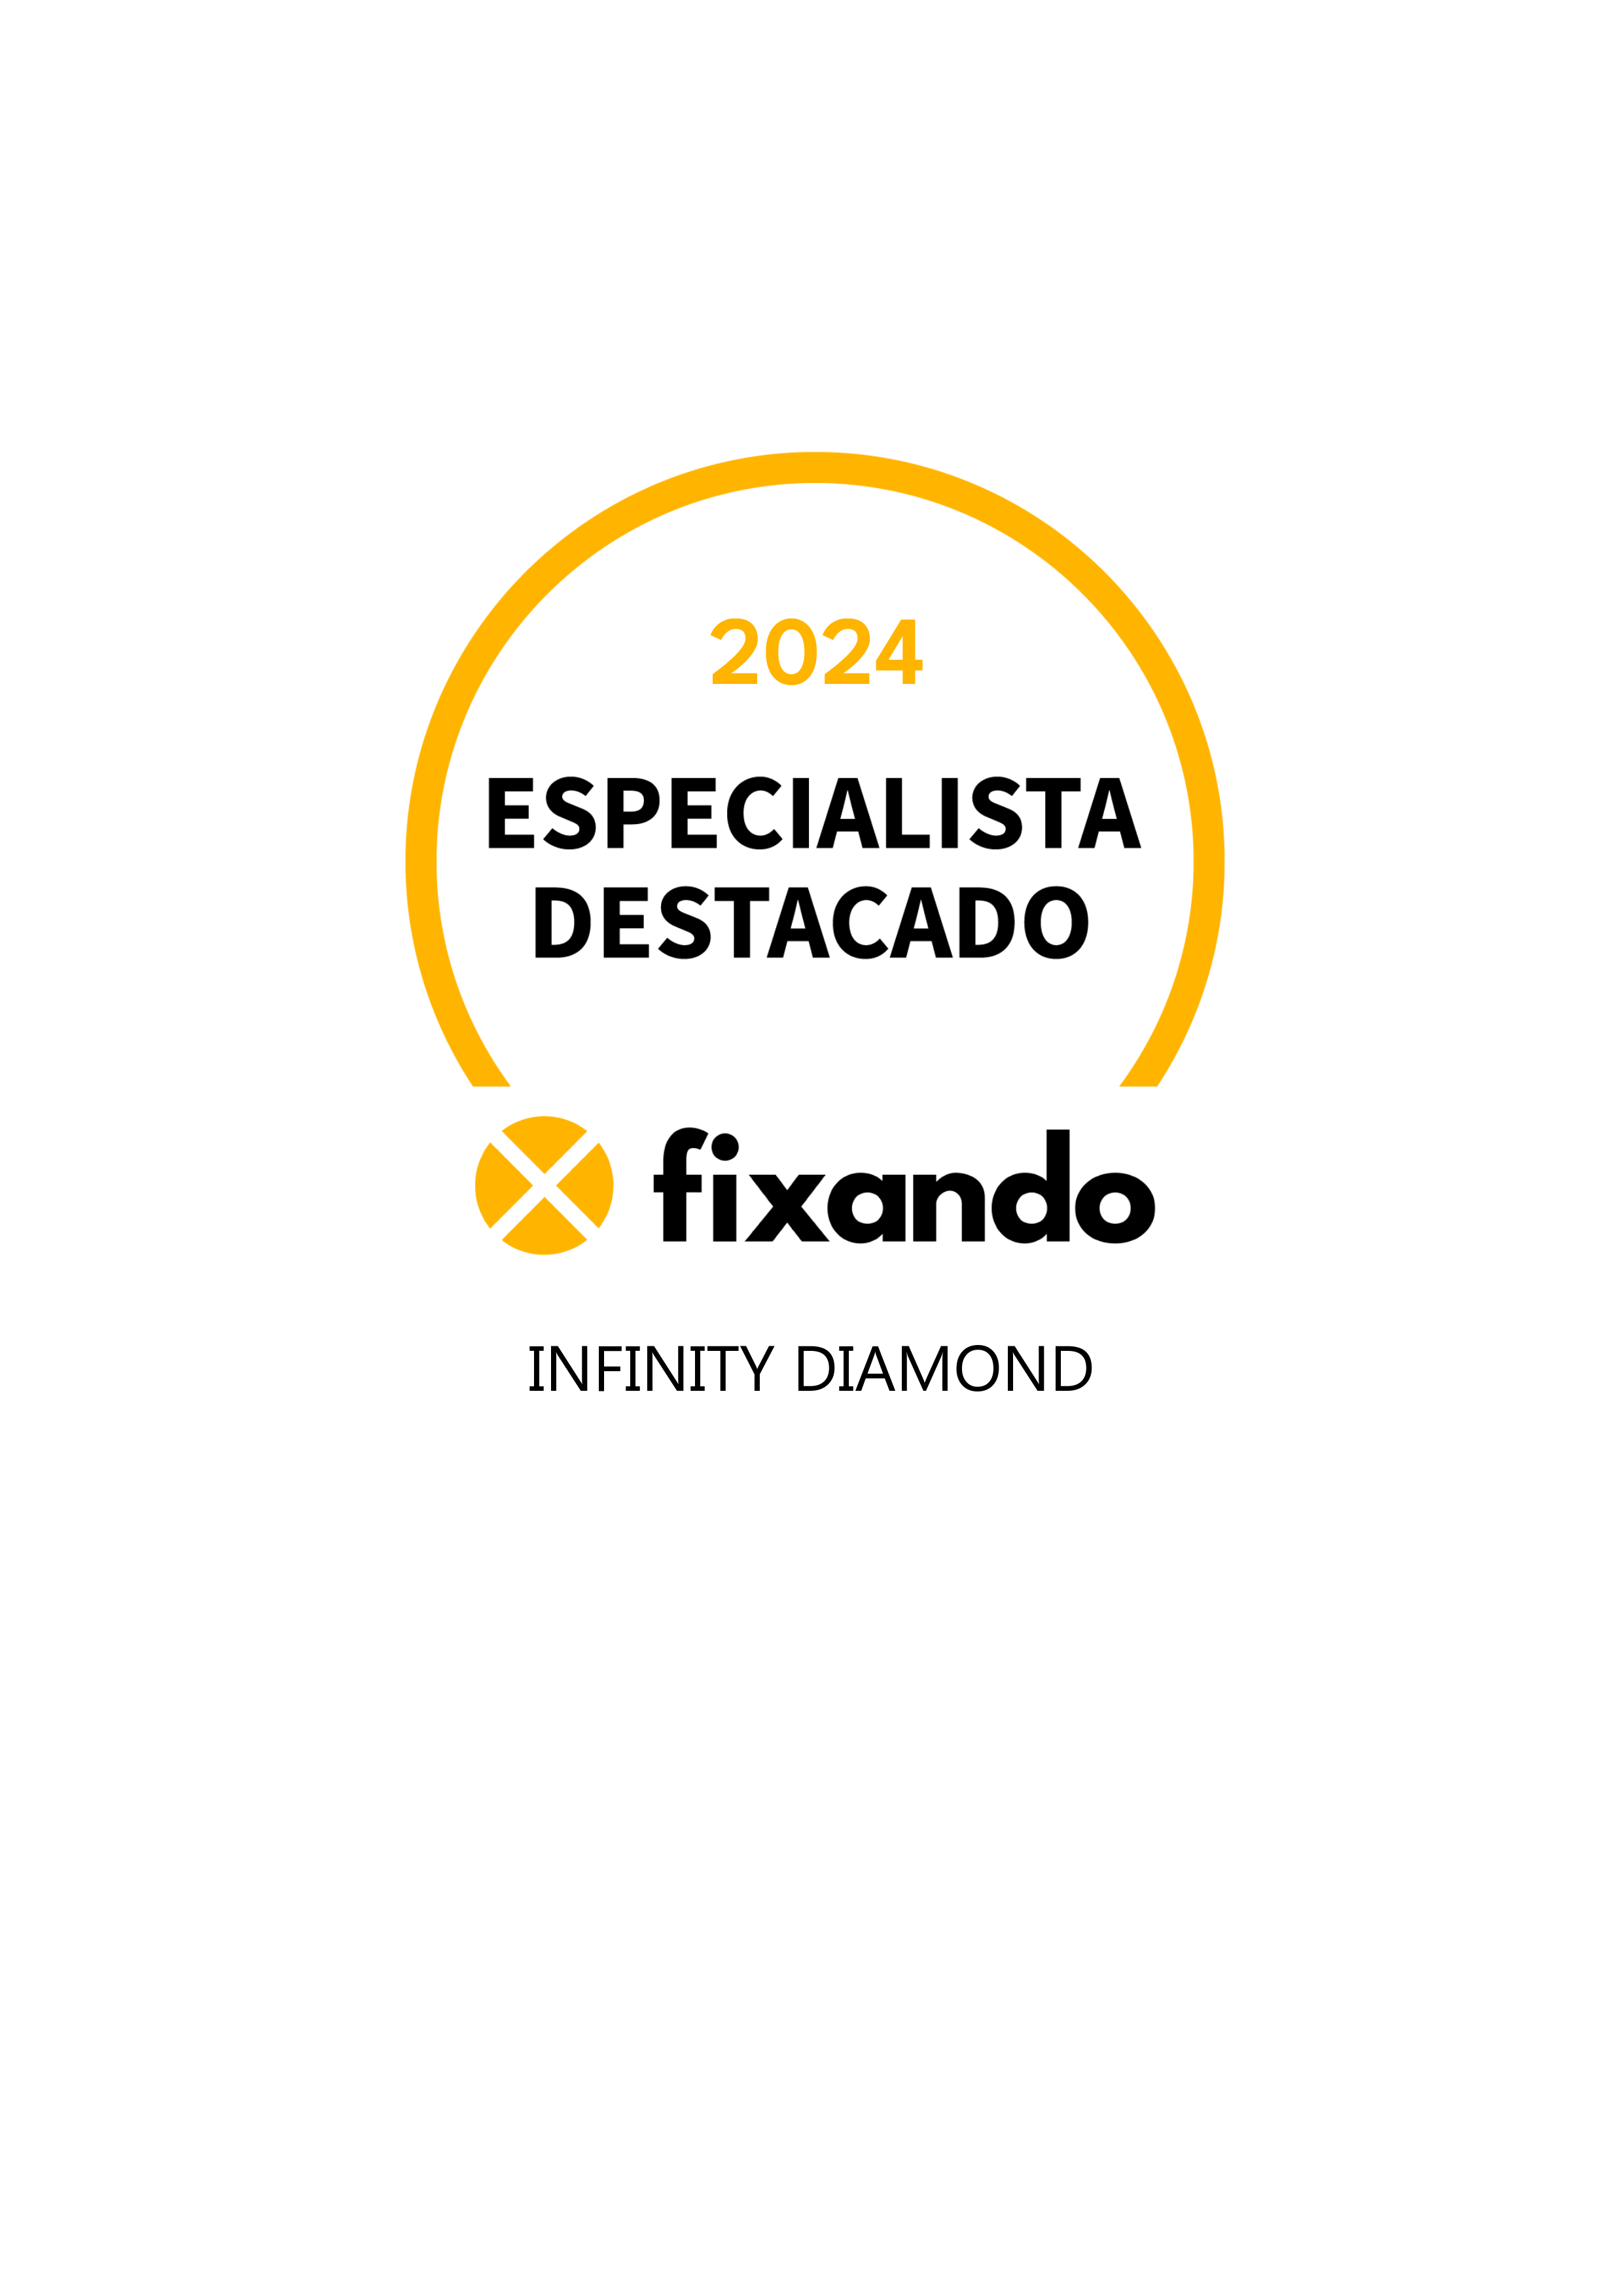 Infinity Diamond - Vila Nova de Gaia - Remodelação de Cozinhas